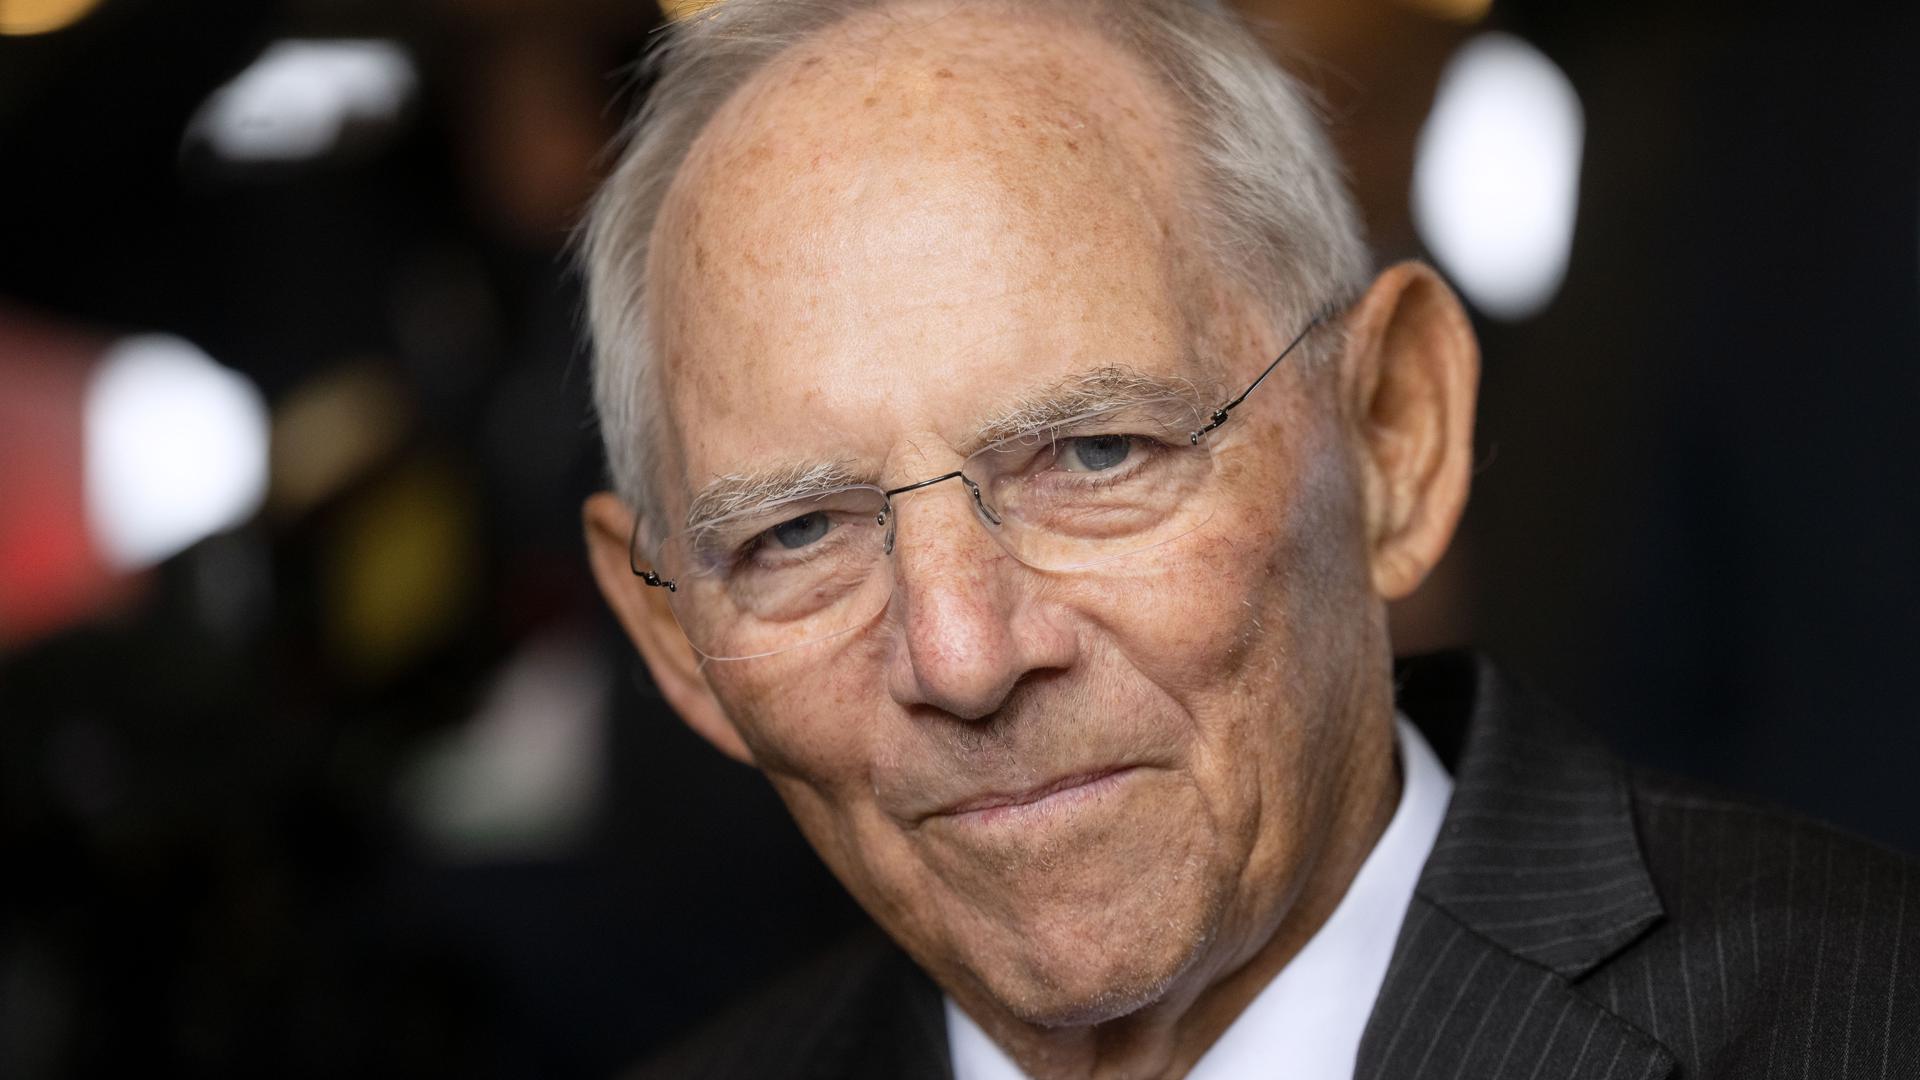 Eine besondere Verbindung hat Wolfgang Schäuble, Bundestagsabgeordneter und Präsident des Deutschen
Bundestags a.D., seit dem Attentat auf ihn im Jahr 1990 zum SRH Klinikum Karlsbad-Langensteinbach.